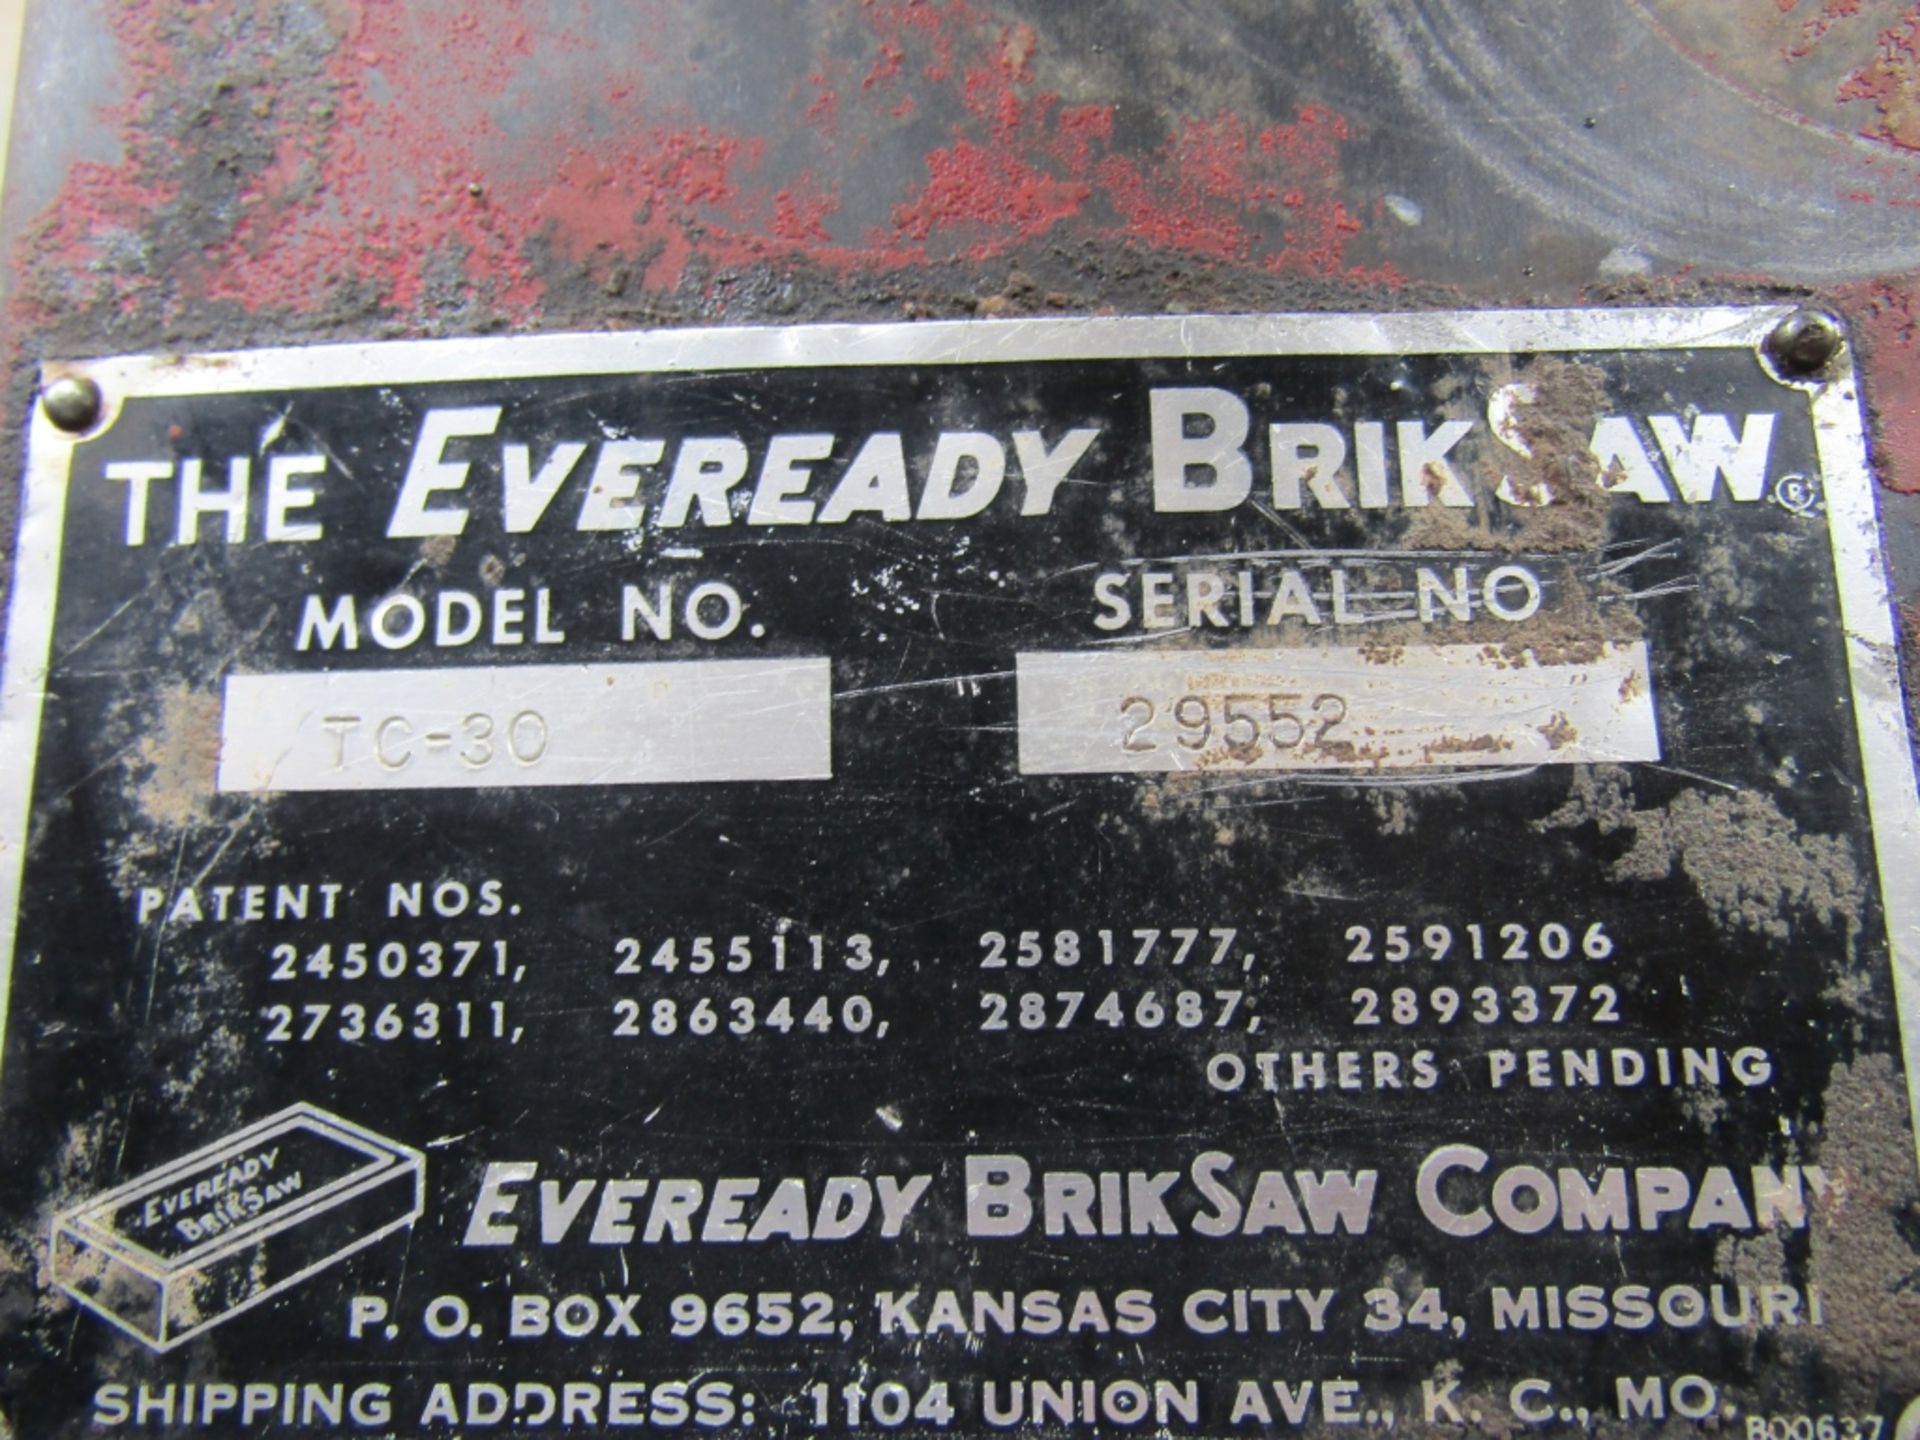 Everyday Brik Saw Oiler, Model #7C-30 , Serial #29552, Predator Engine - Image 2 of 4